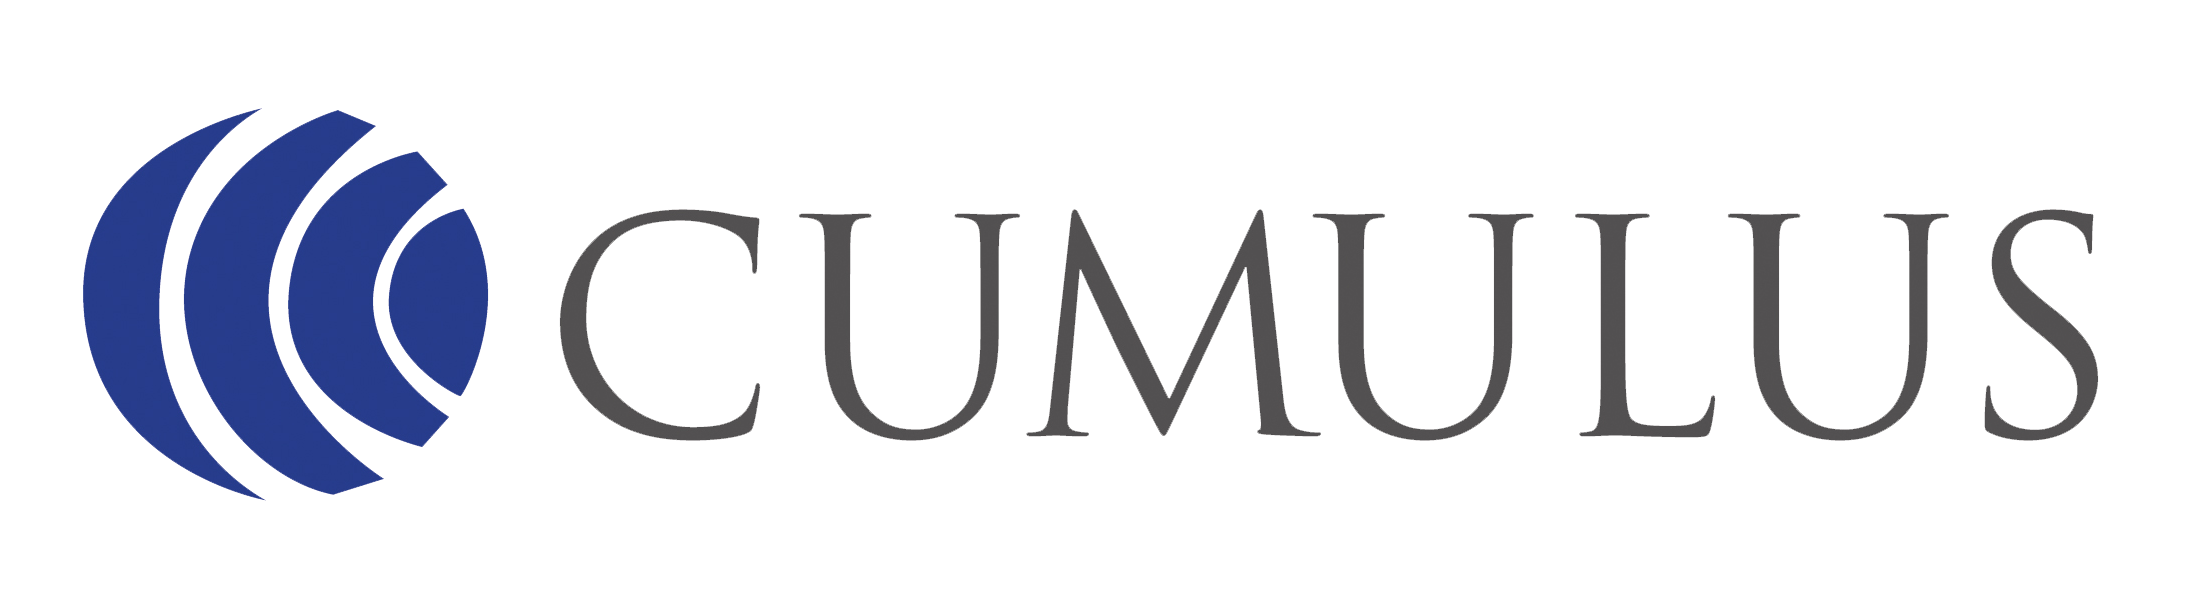 Cumulus-logo